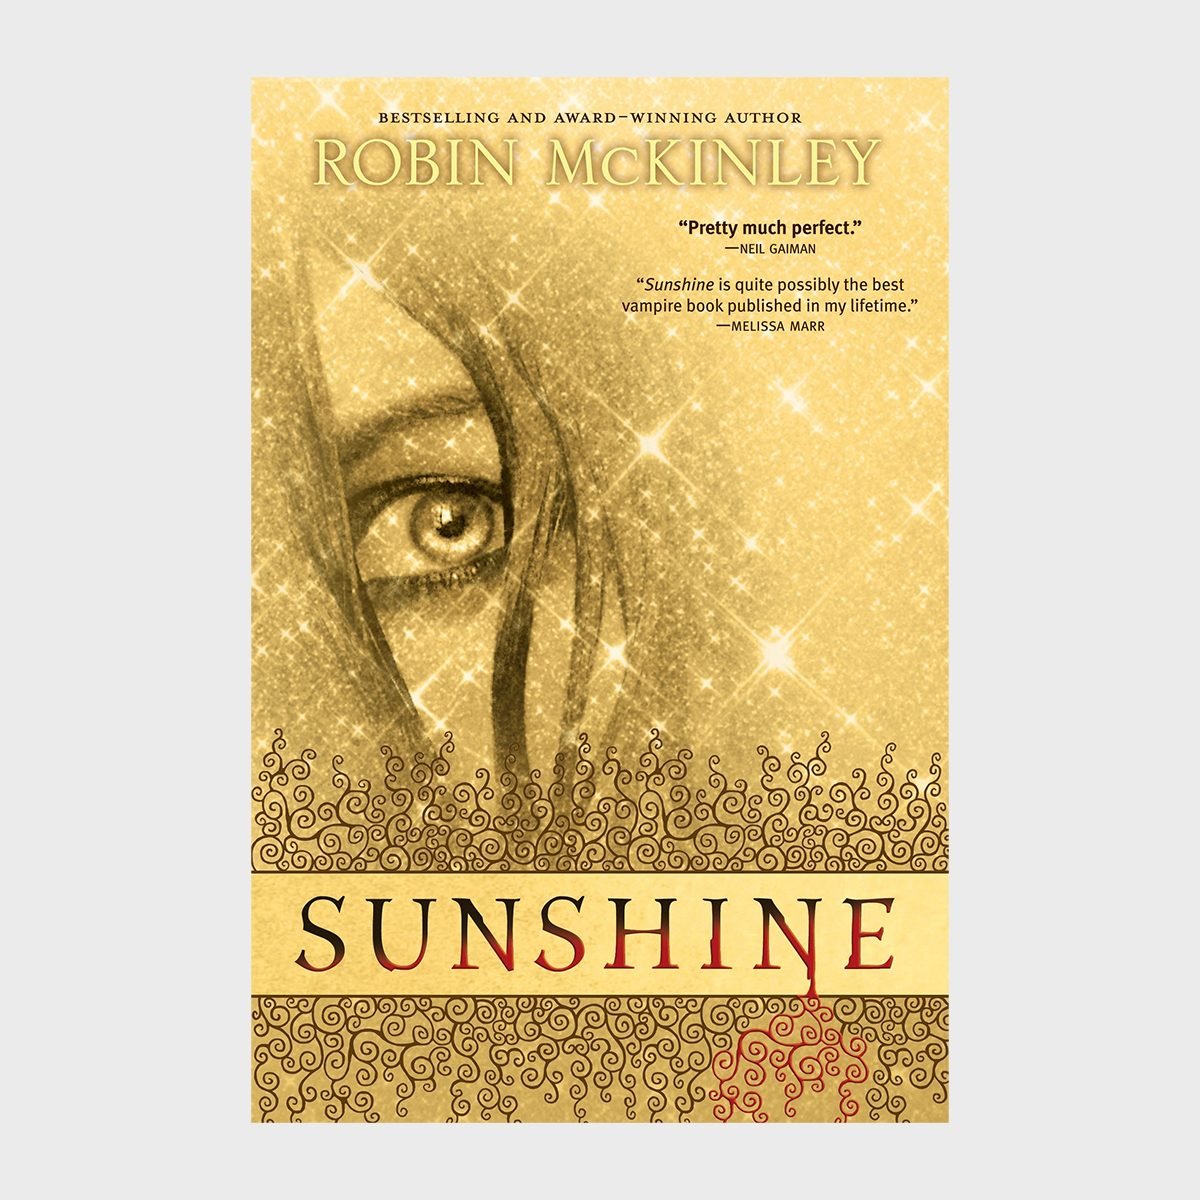 Sunshine Book